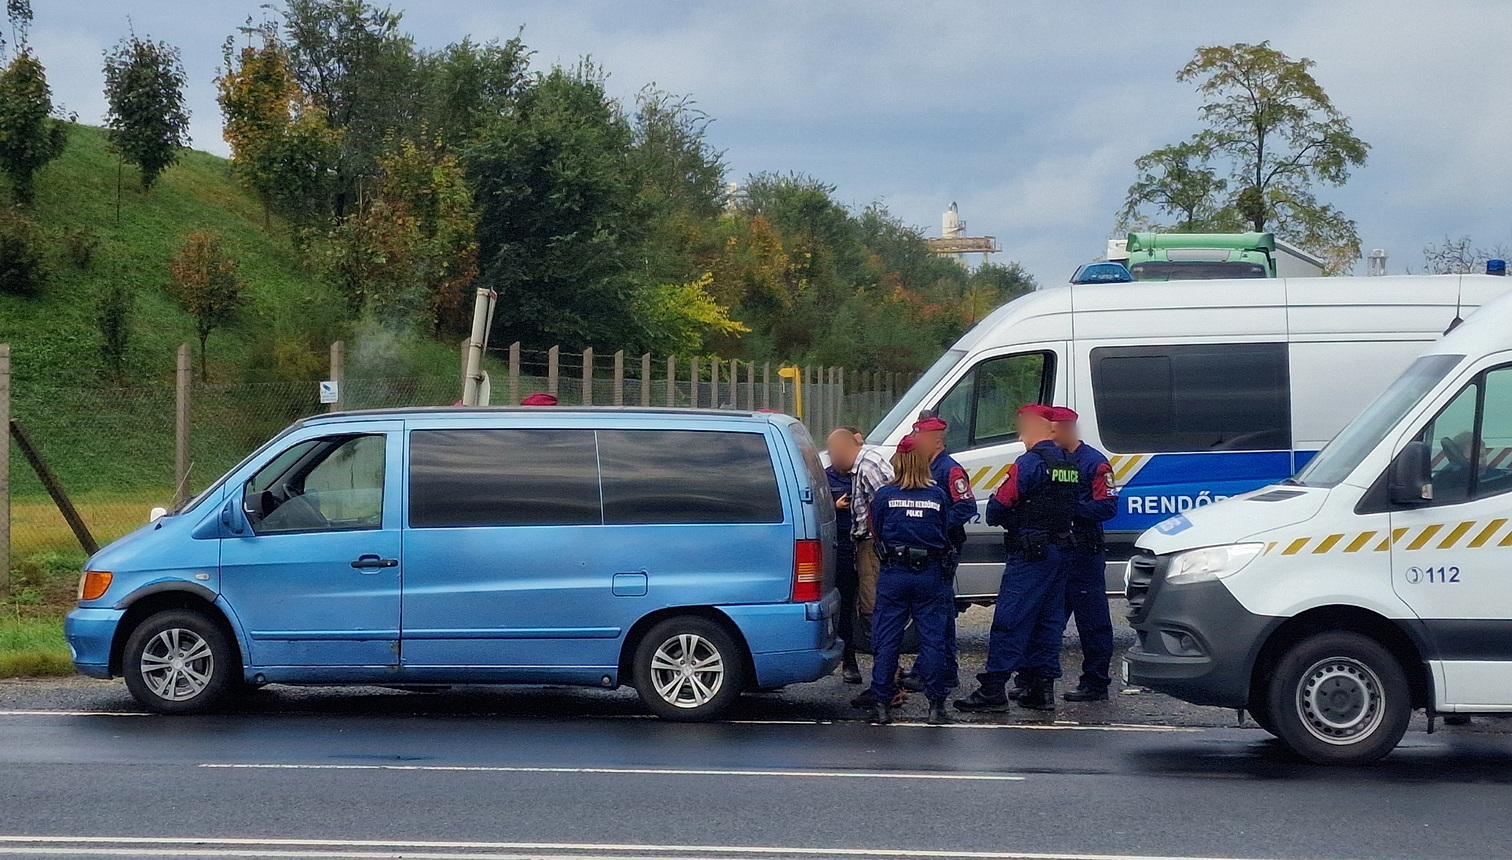 A lengyel rendszámú Mercedest vezető idős embercsempészt megbilincselték Szombathely határában